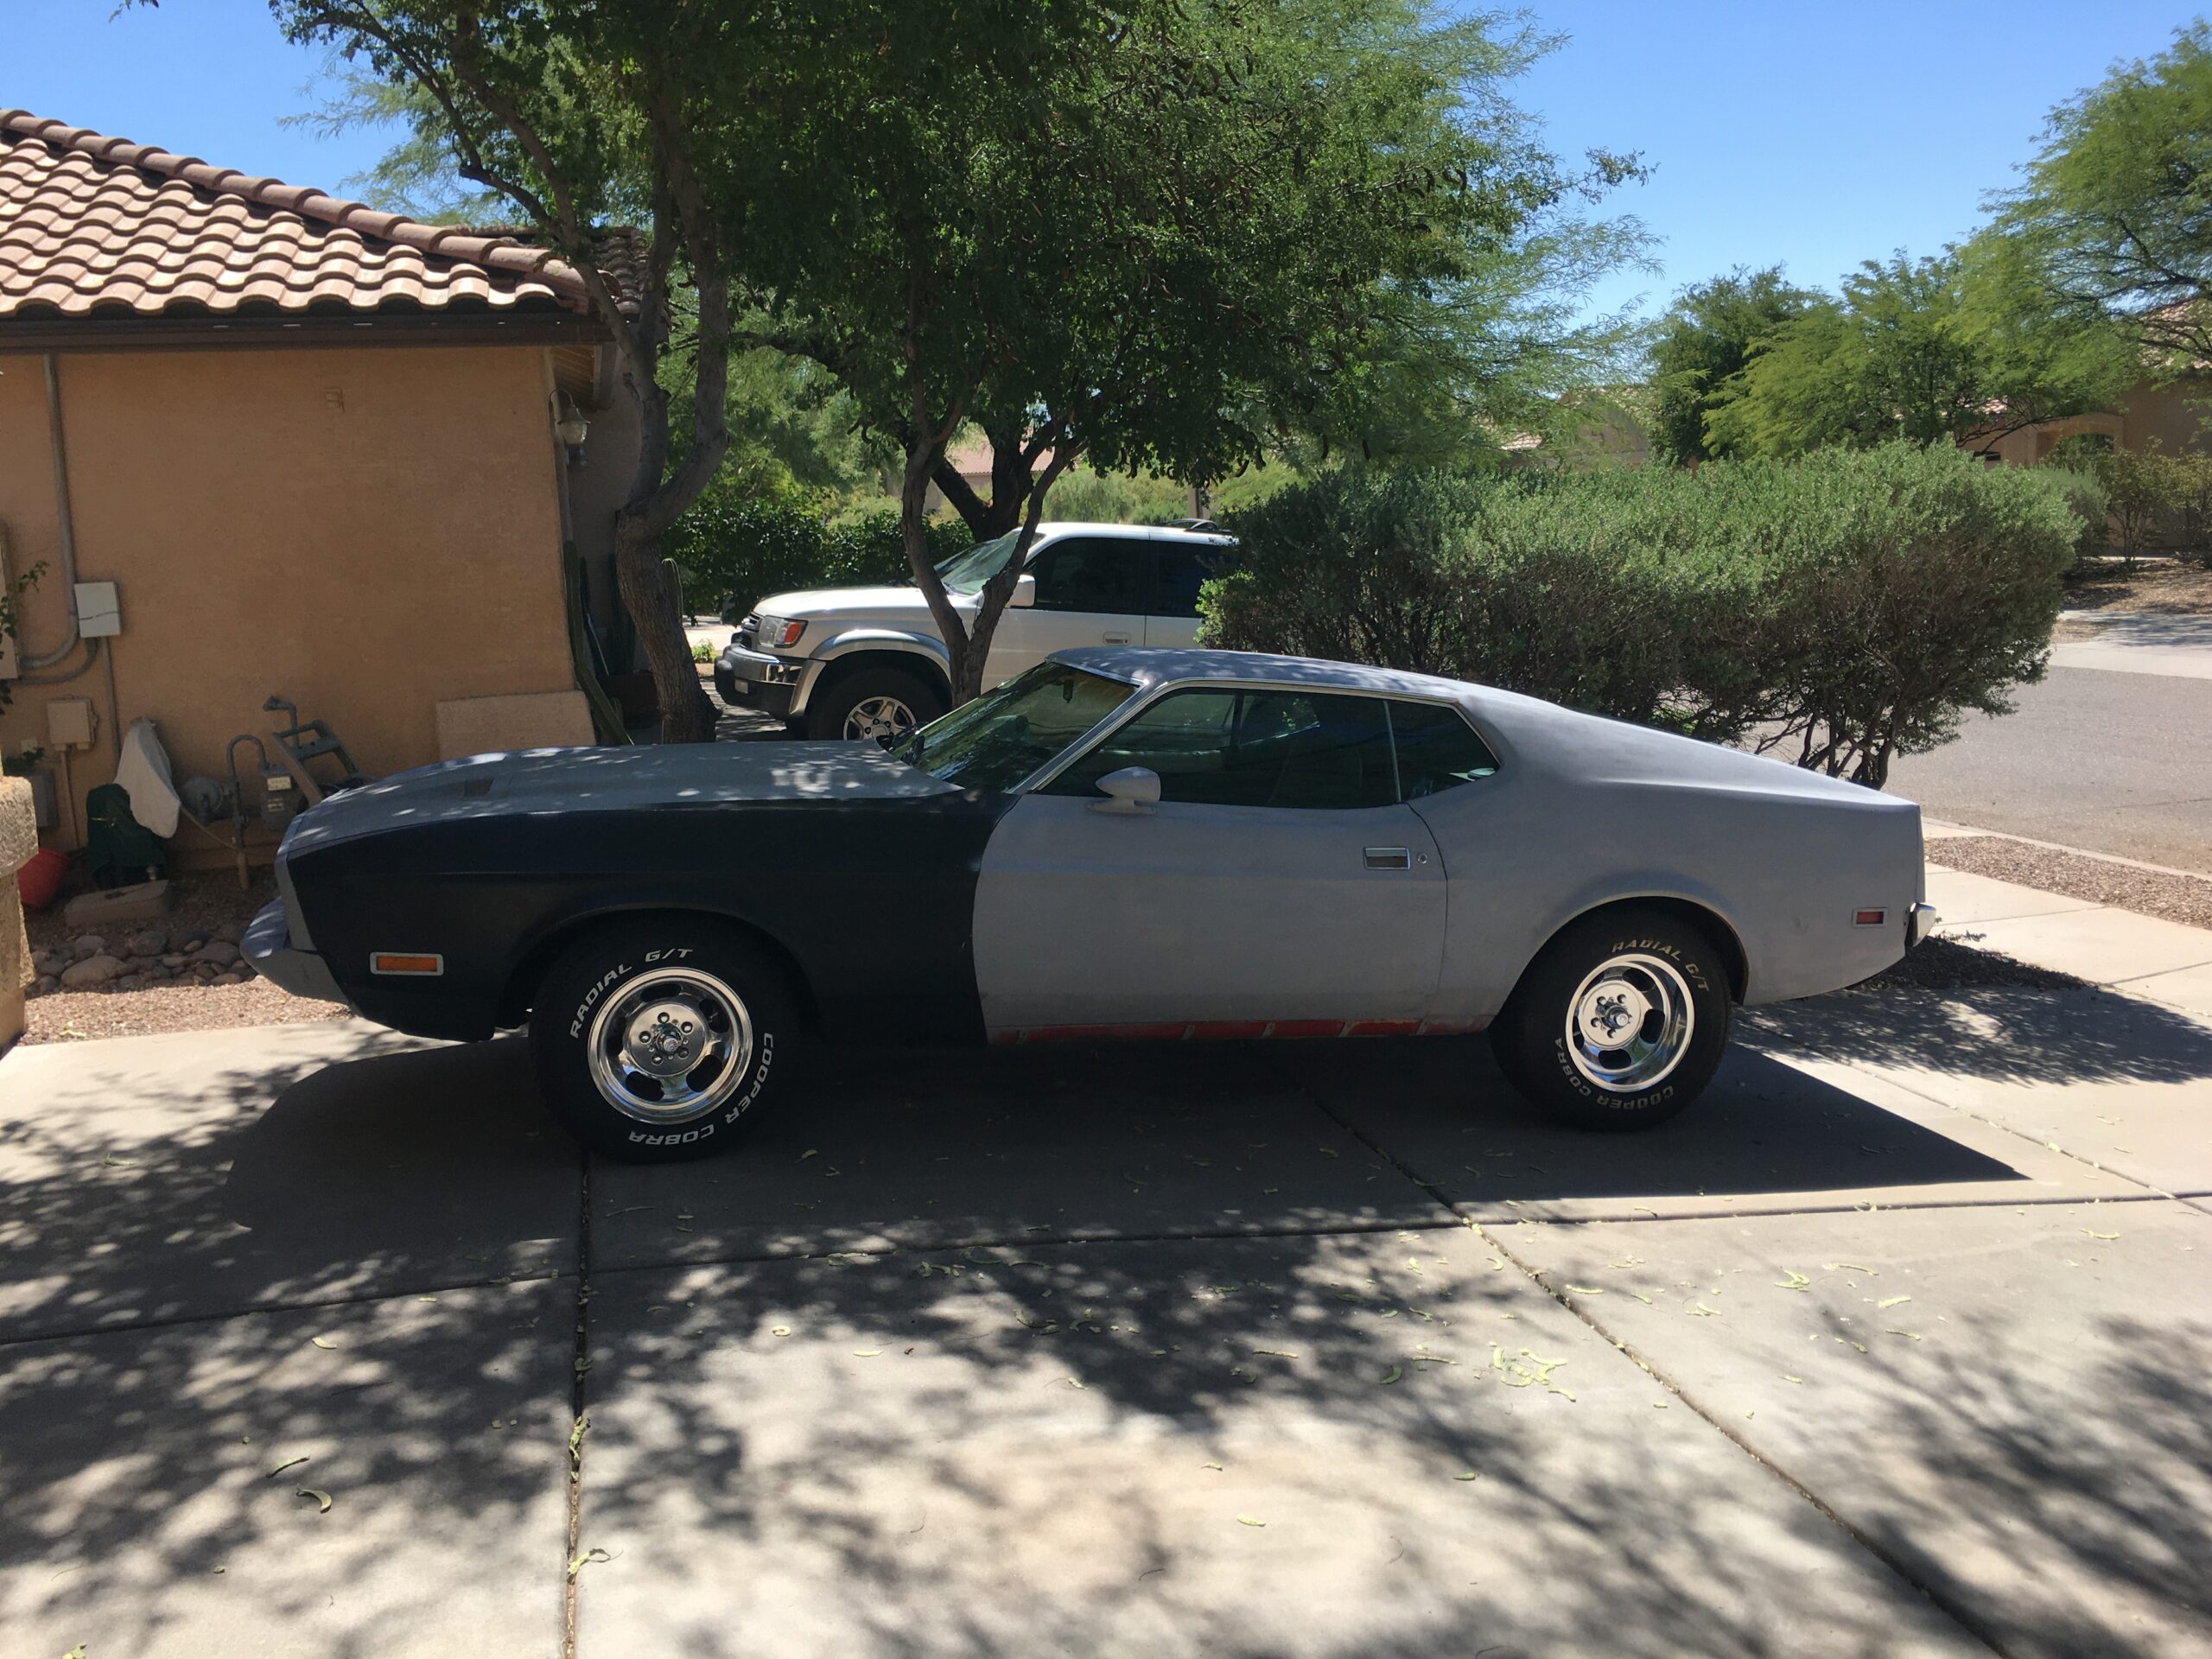 Update on #ProjectSportsRoom – 1973 Mustang.